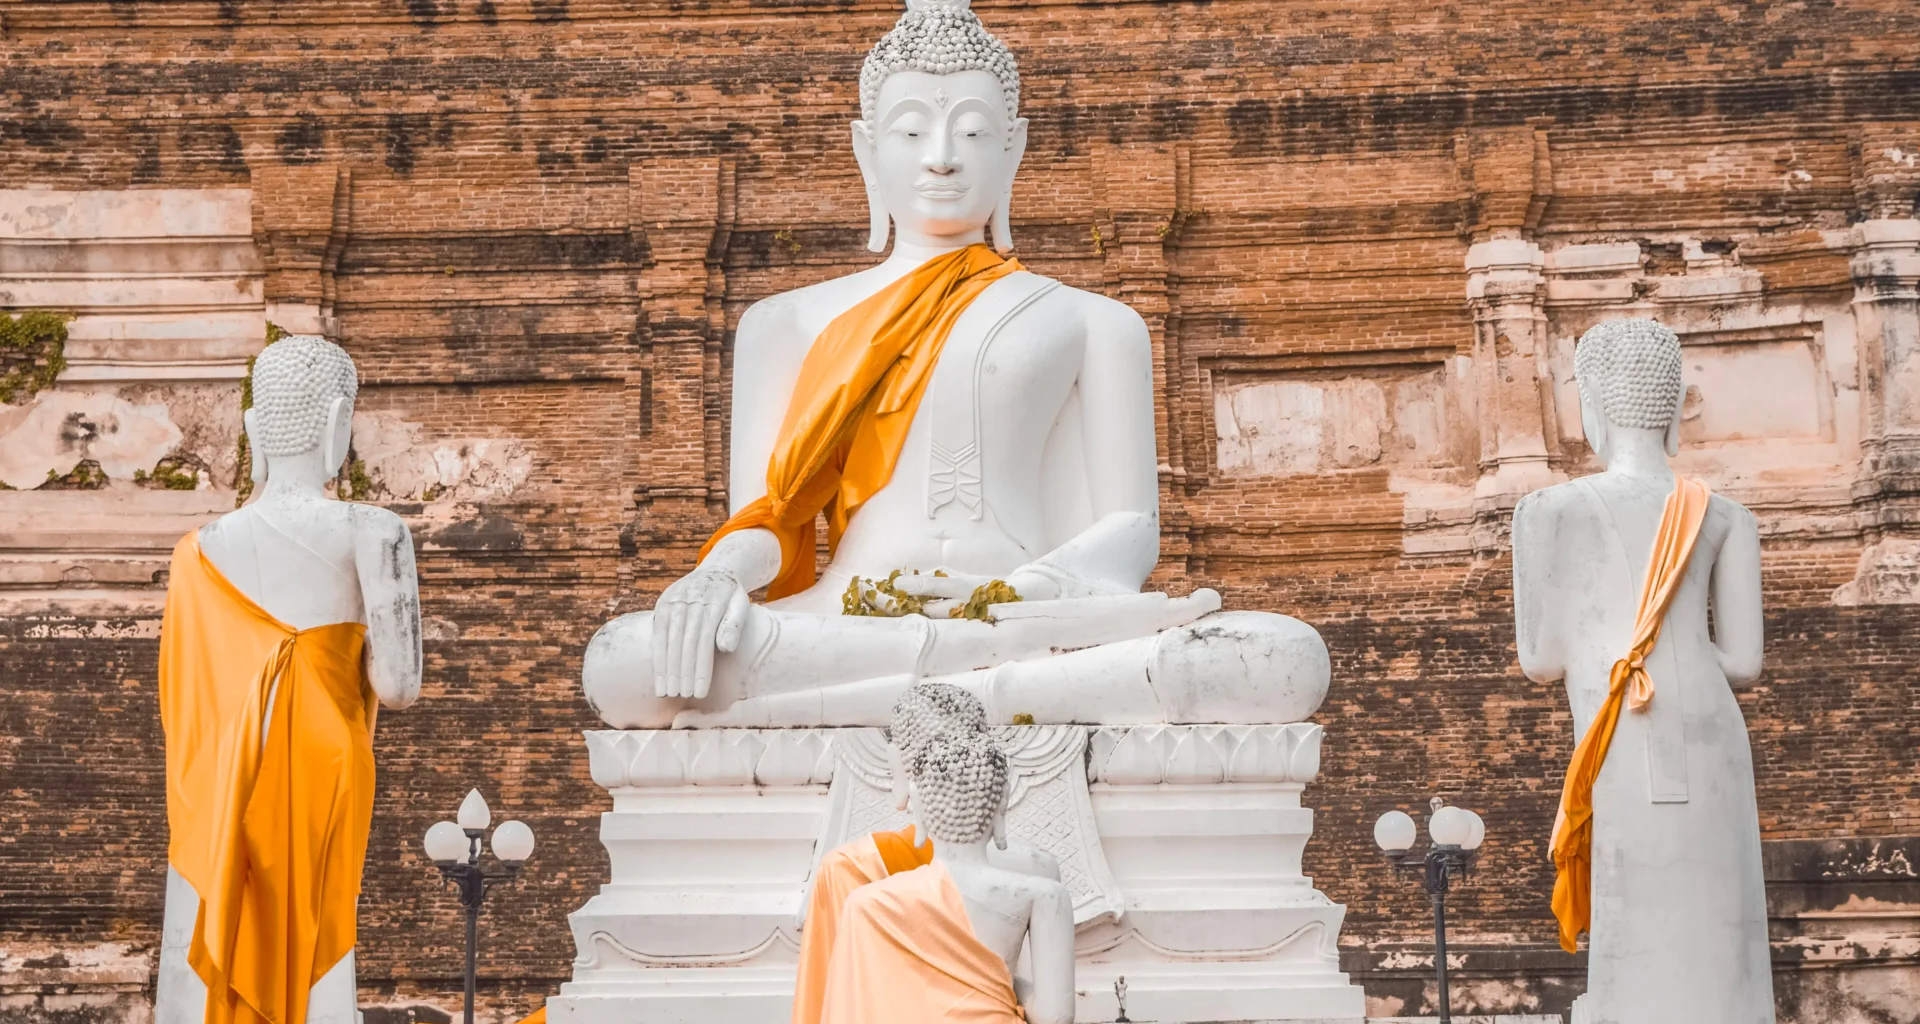 Visit Ayutthaya Historical Park from Bangkok